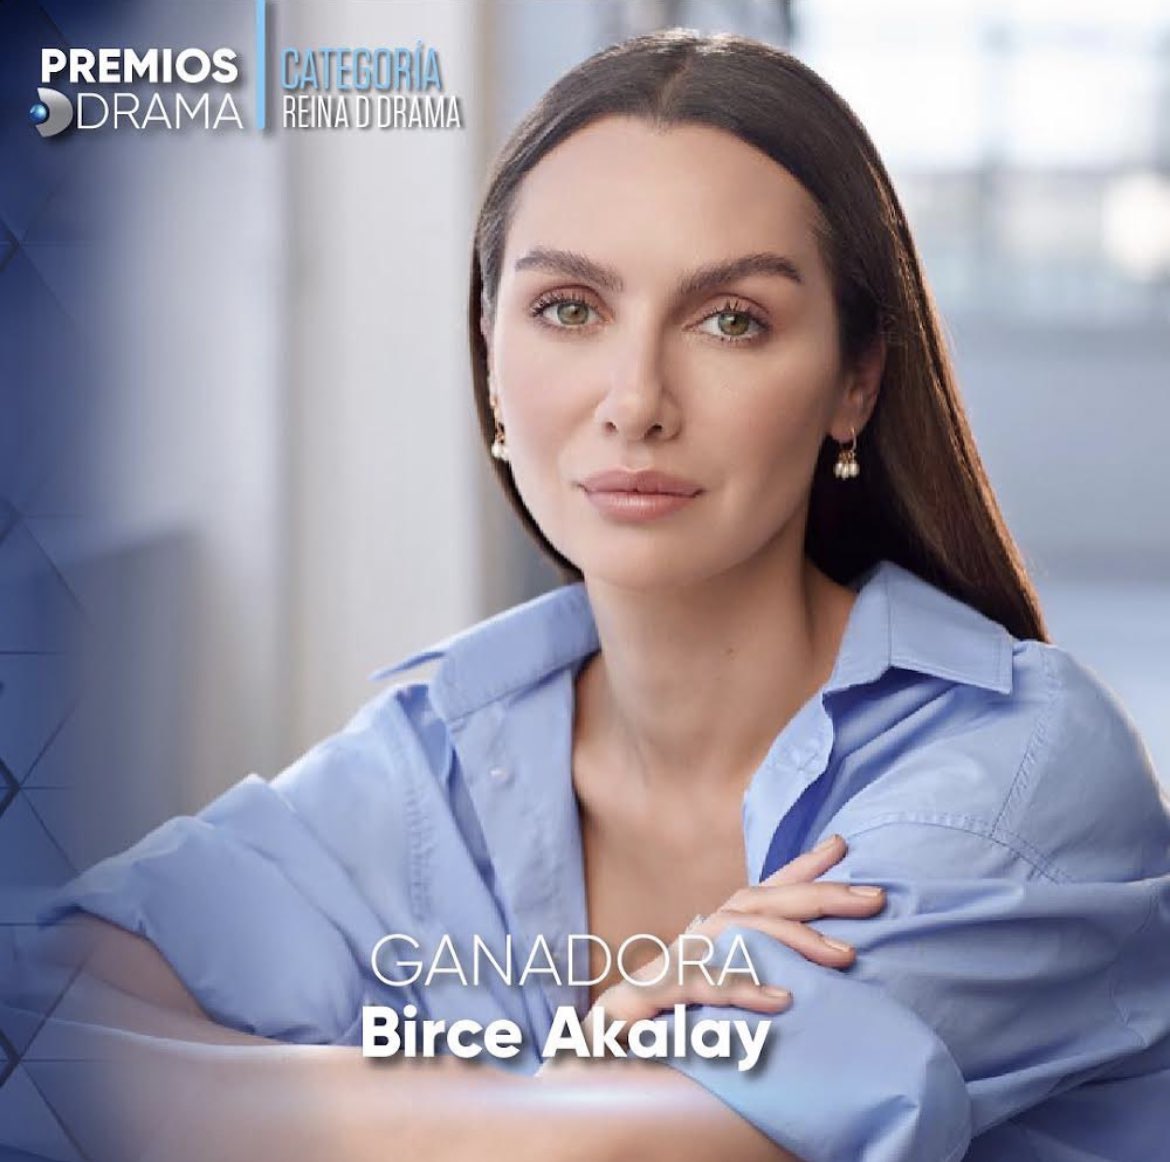 ABD ve Latin Amerika ülkelerinde İspanyolca yayın yapan Kanal D Drama, resmi instagram hesabında düzenlediği ankette, #ReyDDrama (Drama Kralı) kategorisinde kazanan #EnginAkyürek ve #ReinaDDrama (Drama Kraliçesi) kategorisinde kazanan #BirceAkalay oldu.